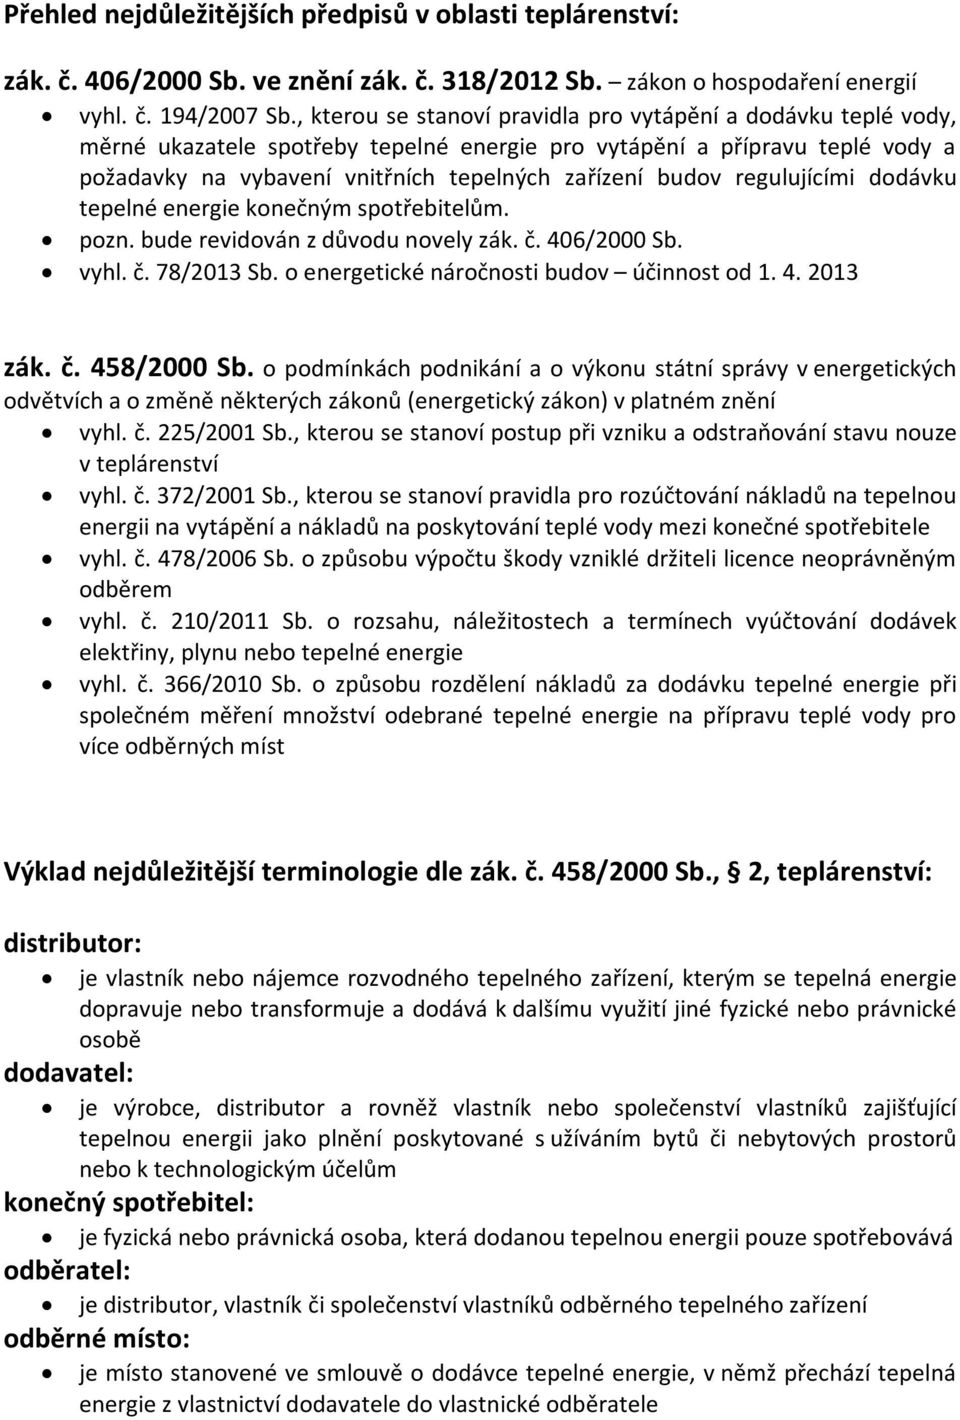 regulujícími dodávku tepelné energie konečným spotřebitelům. pozn. bude revidován z důvodu novely zák. č. 406/2000 Sb. vyhl. č. 78/2013 Sb. o energetické náročnosti budov účinnost od 1. 4. 2013 zák.